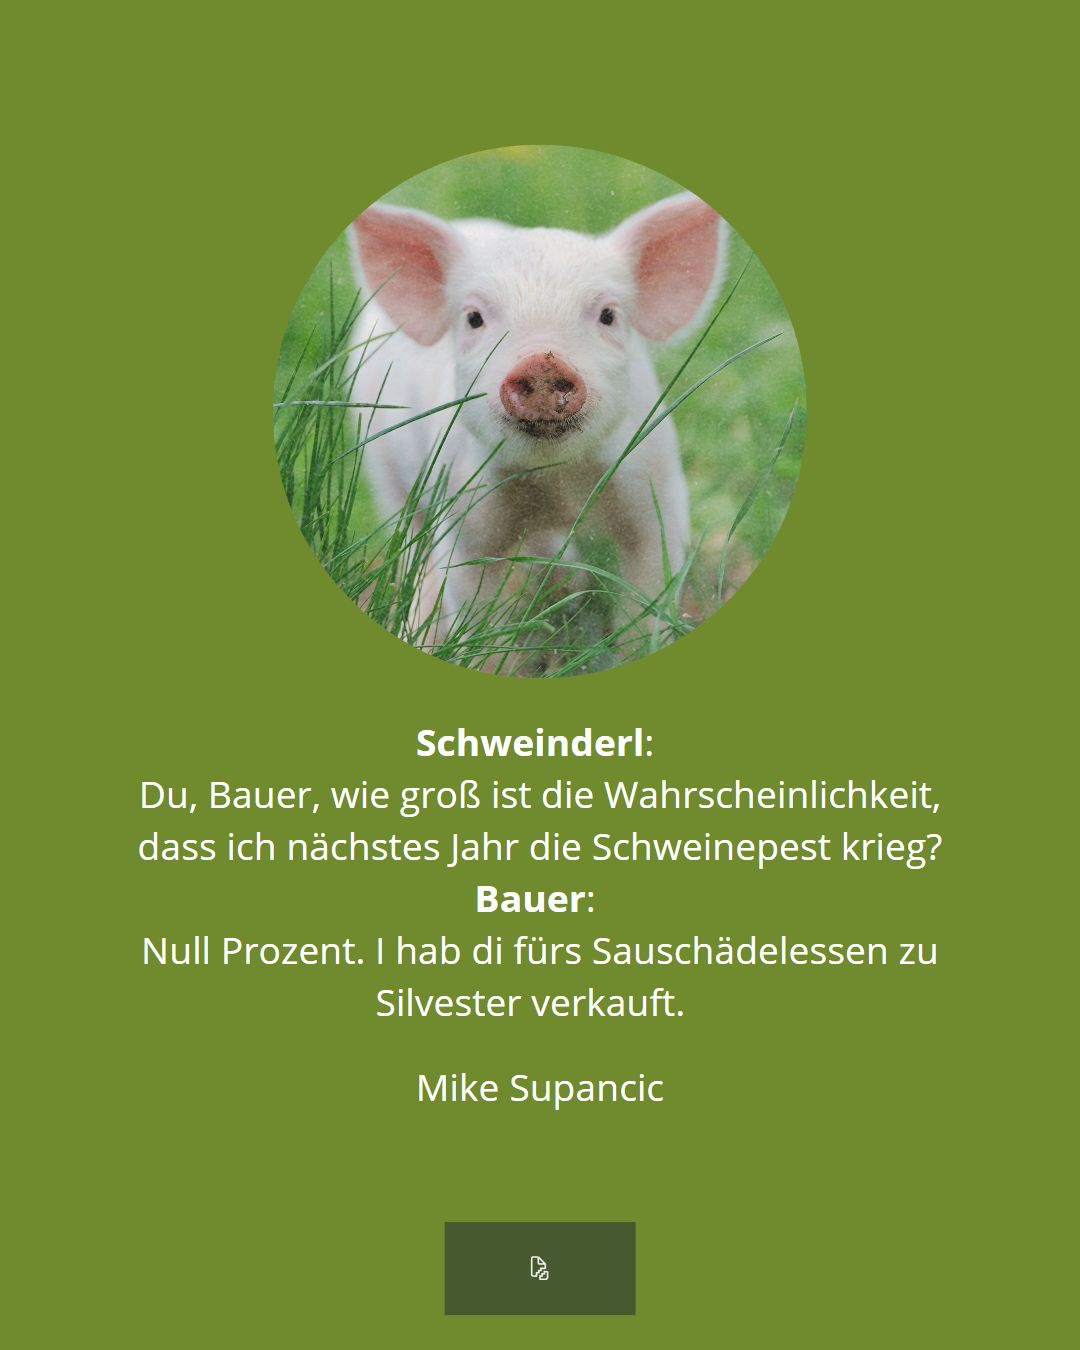 Mike Supancic: Gespräch Schweinderl & Bauer